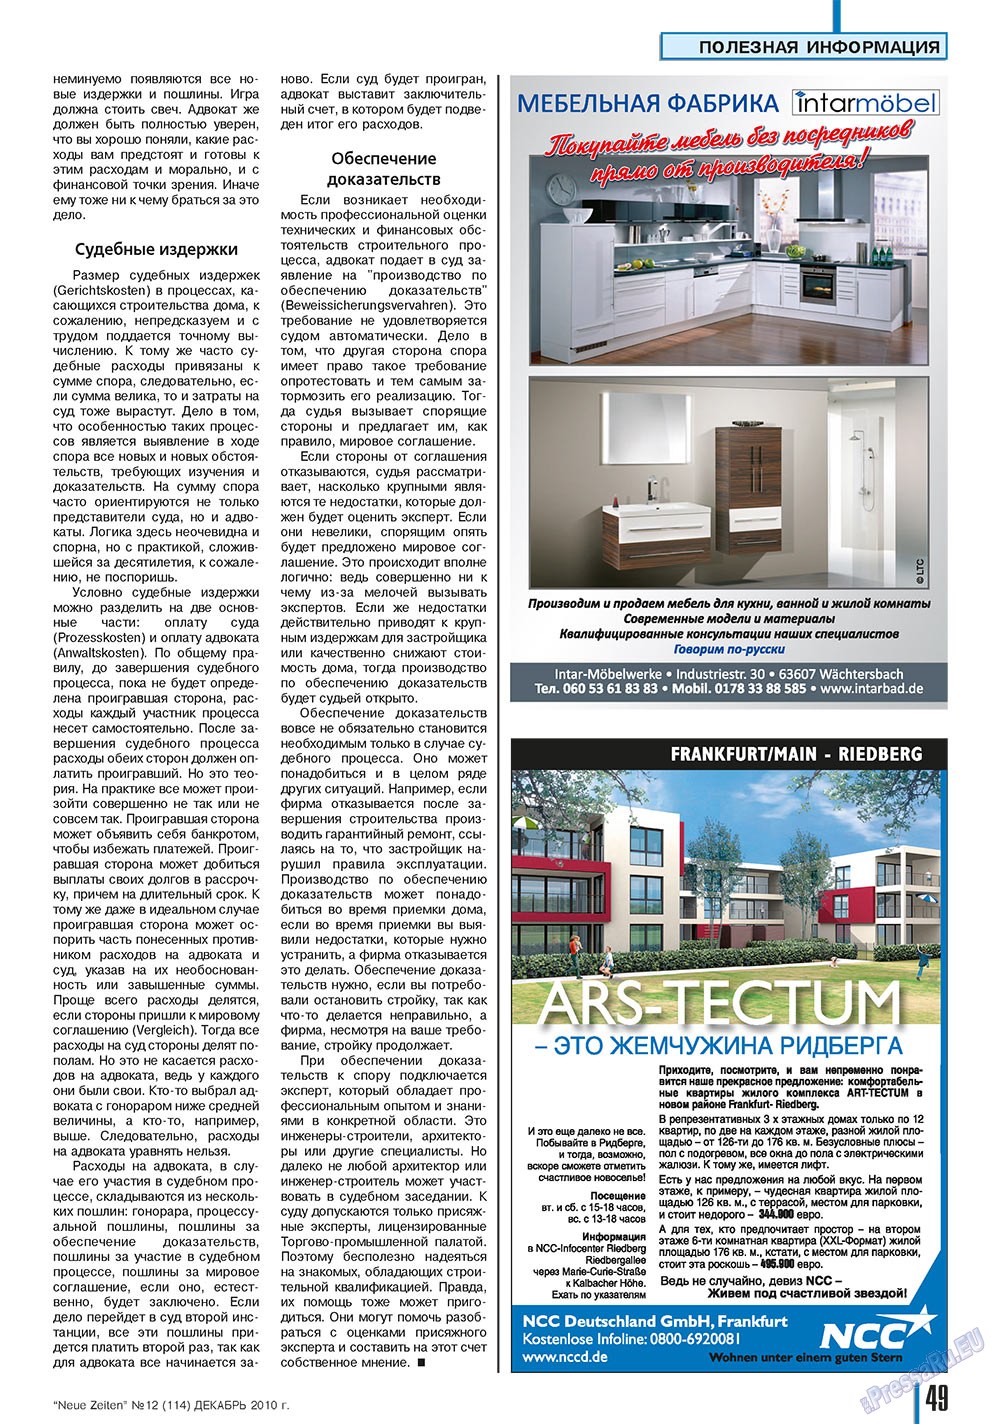 Neue Zeiten, журнал. 2010 №12 стр.49